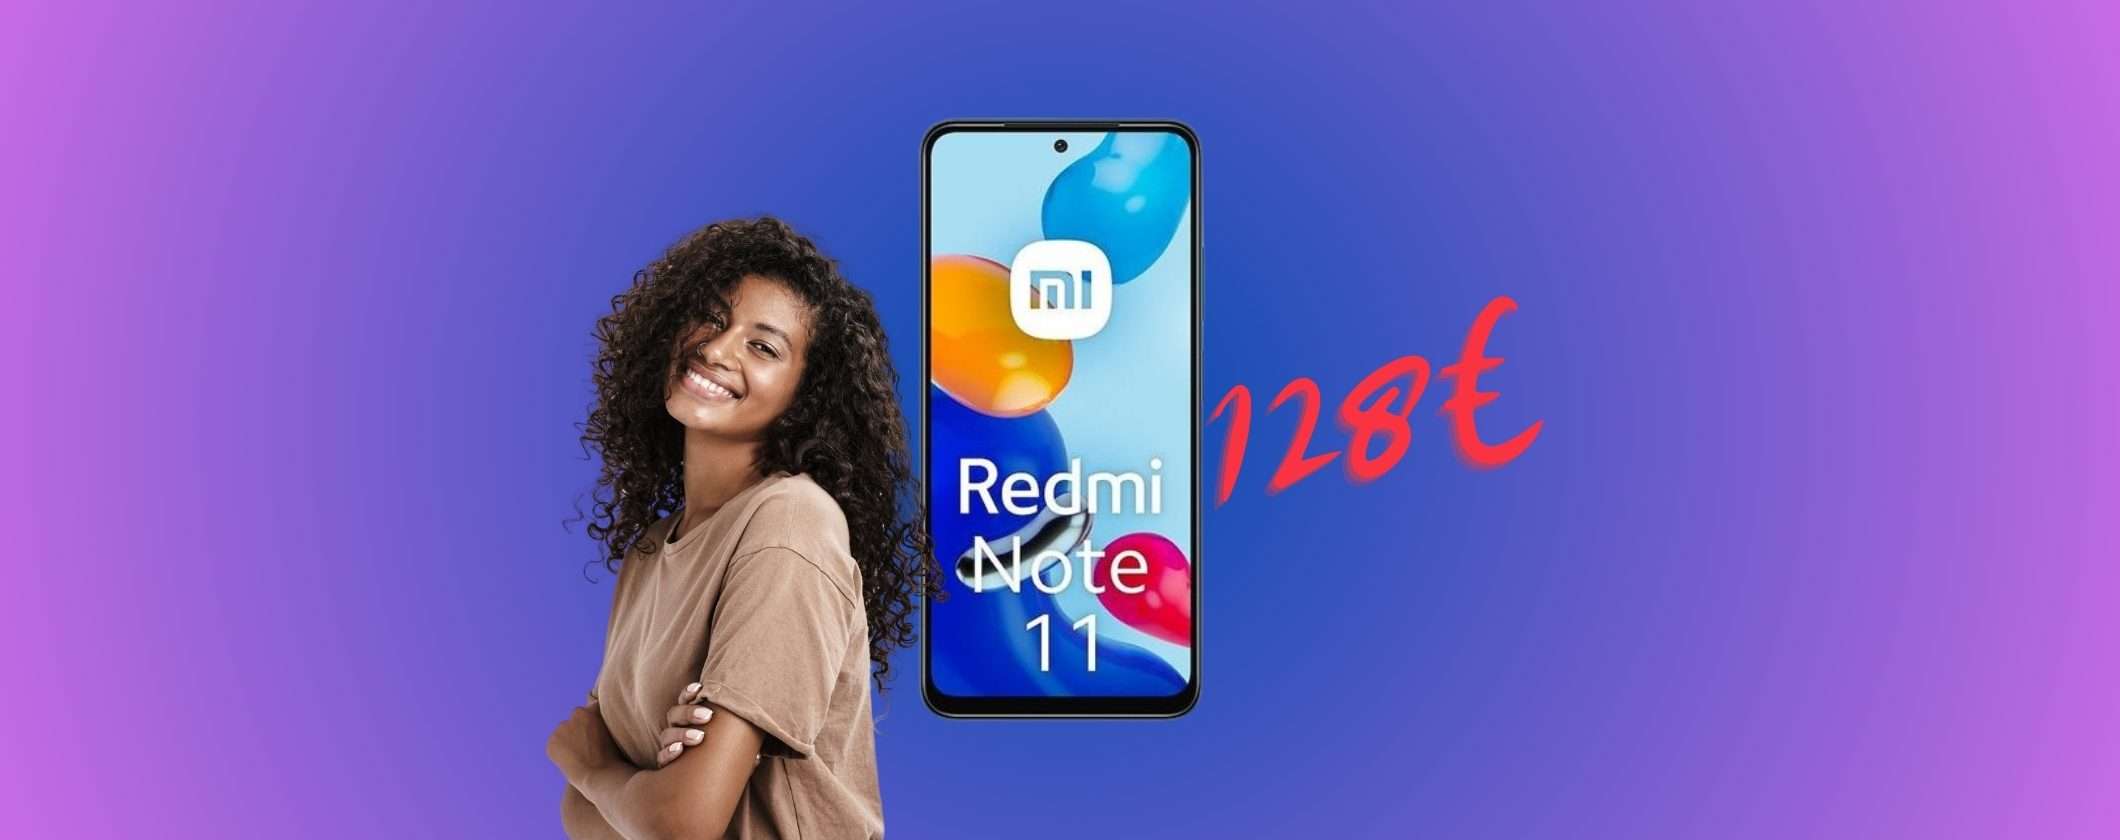 Redmi Note 11 a soli 128€: OFFERTA LAMPO su ePrice